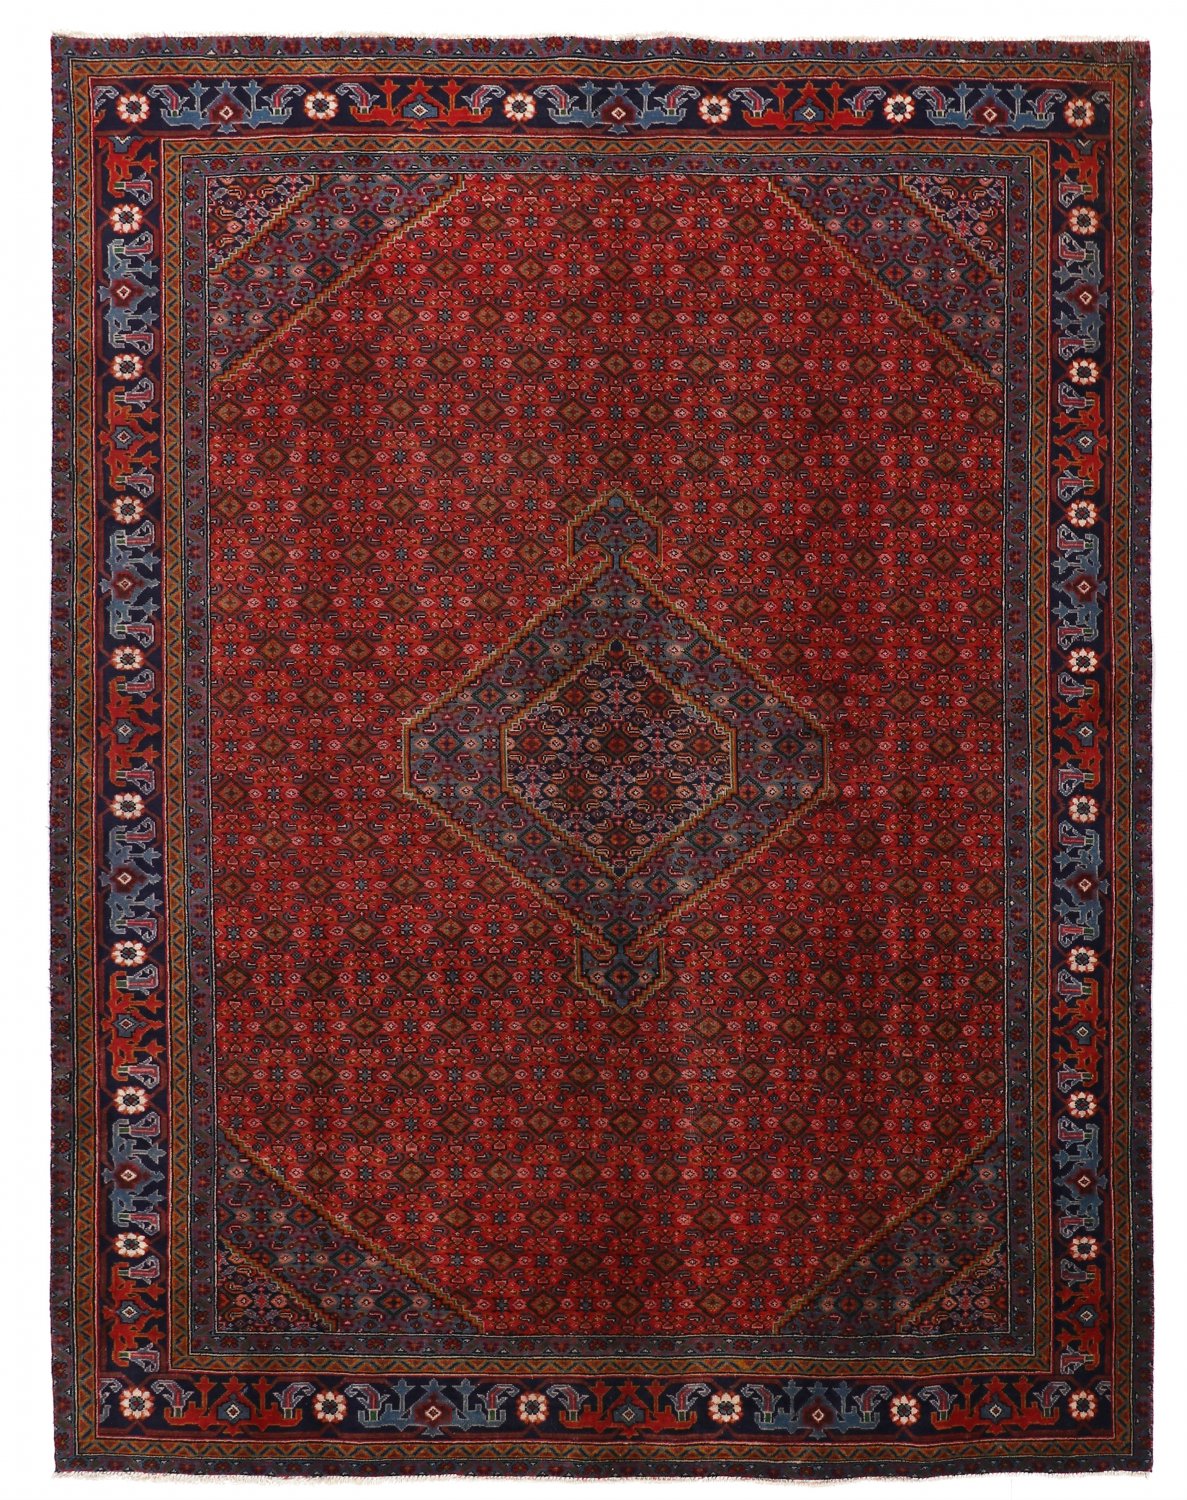 Persian rug Hamedan 281 x 197 cm